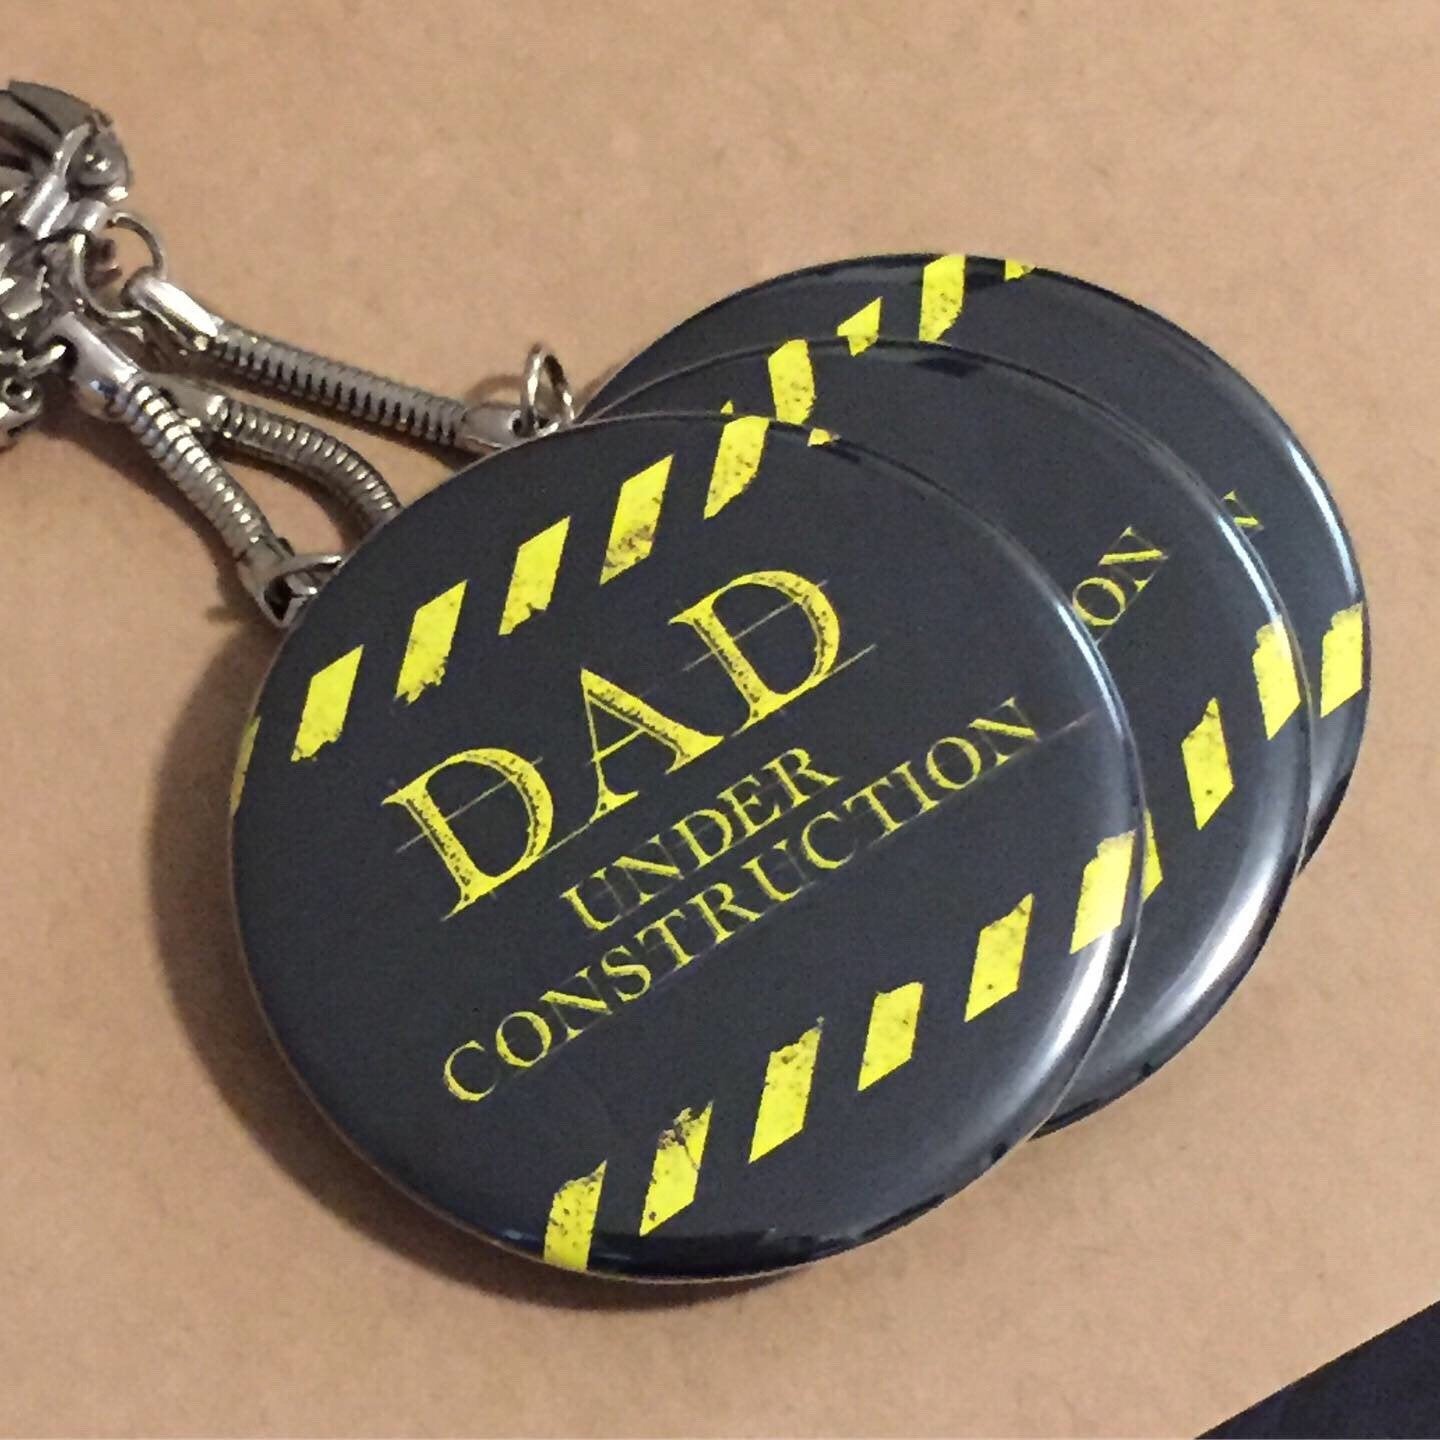 New Dad Superpower Button Key chain